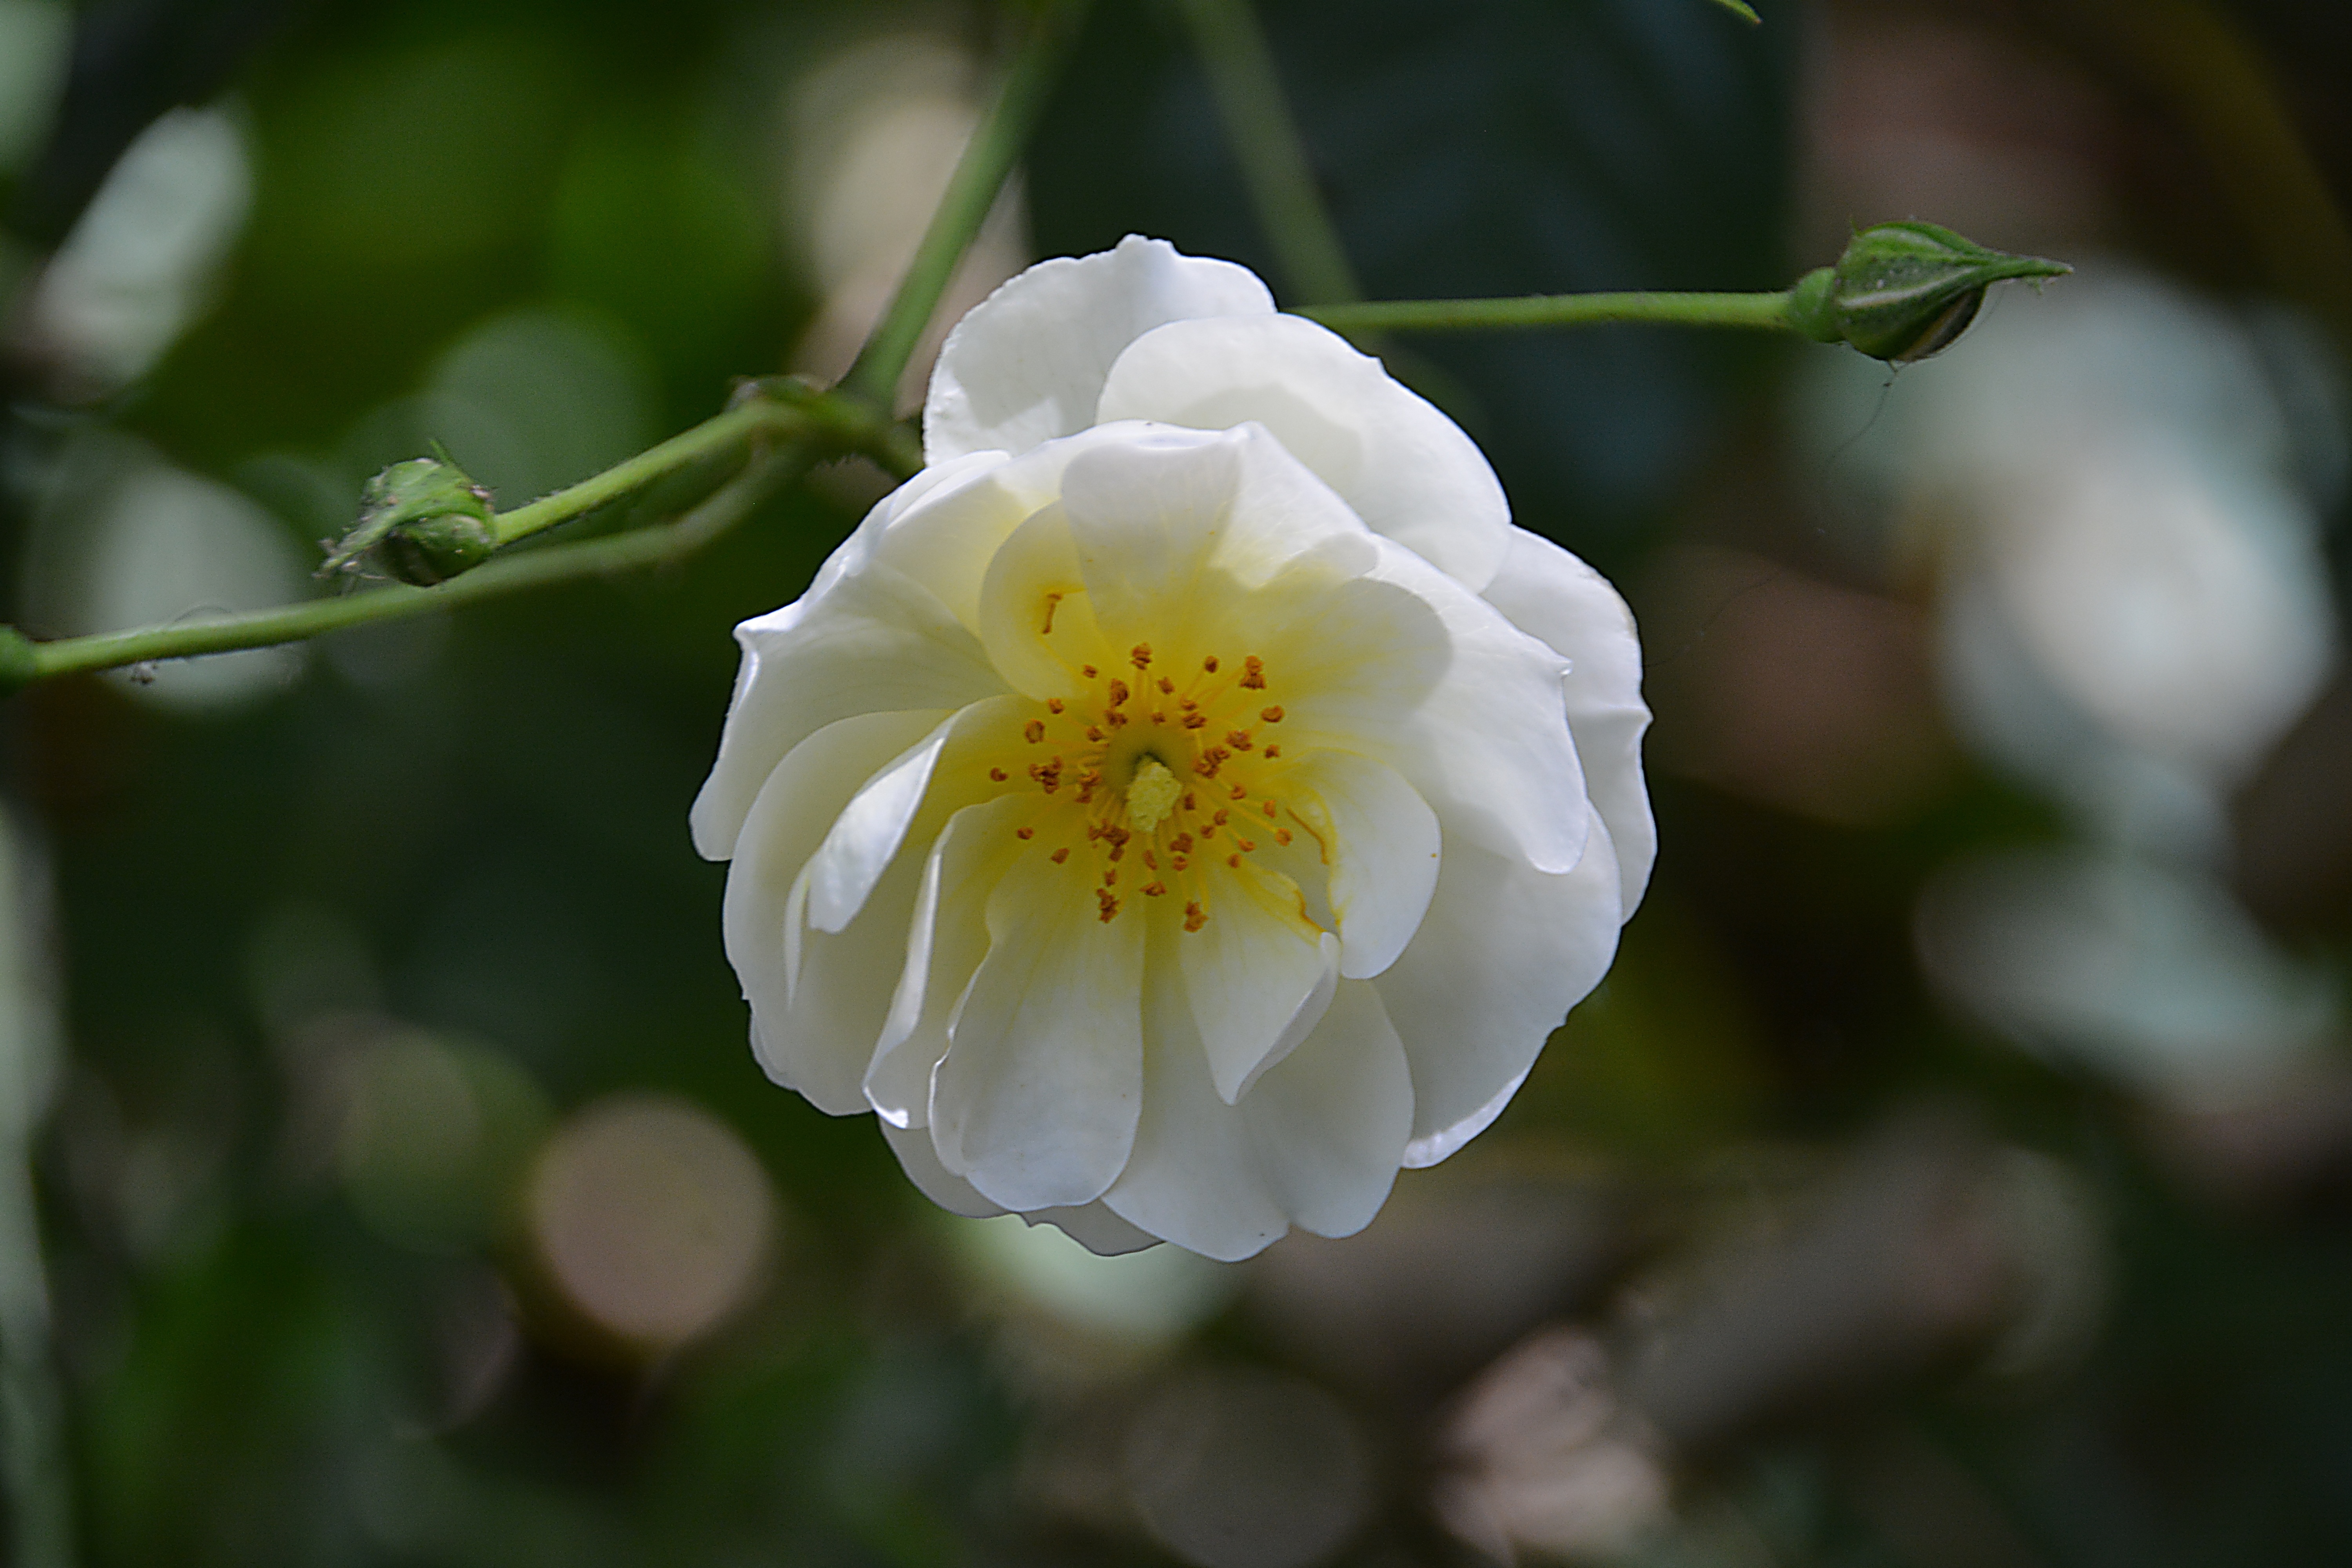 white clustered flower